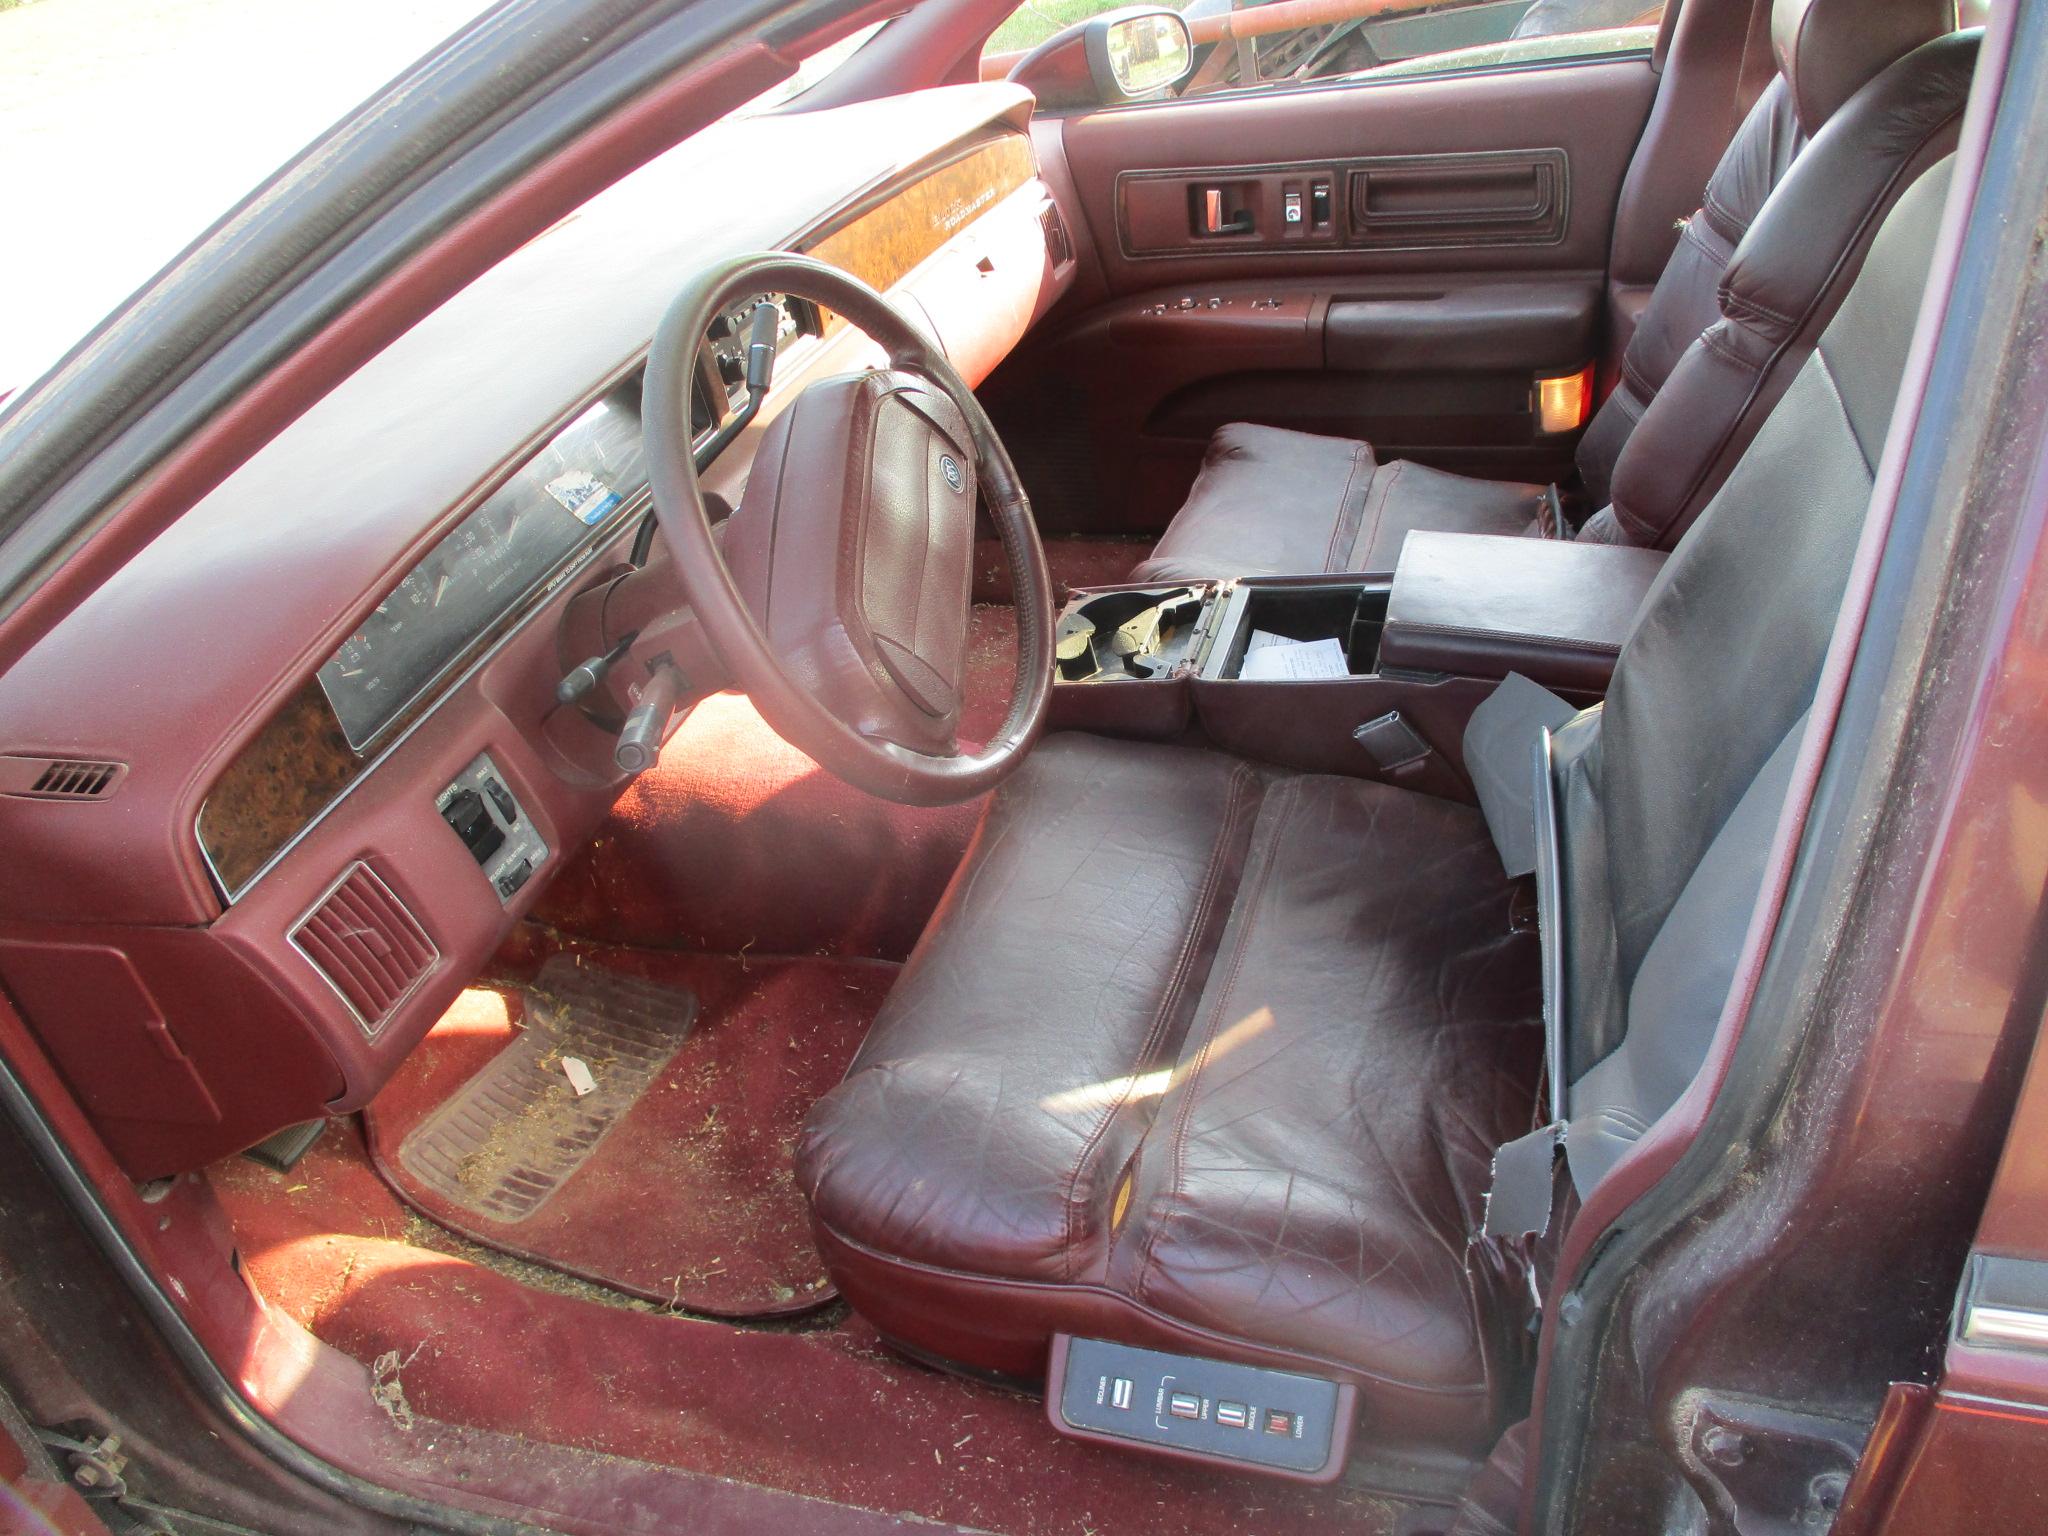 1992 Buick RoadmasterLimited, 141,634 one owner miles, LS1 motor, power windows & locks